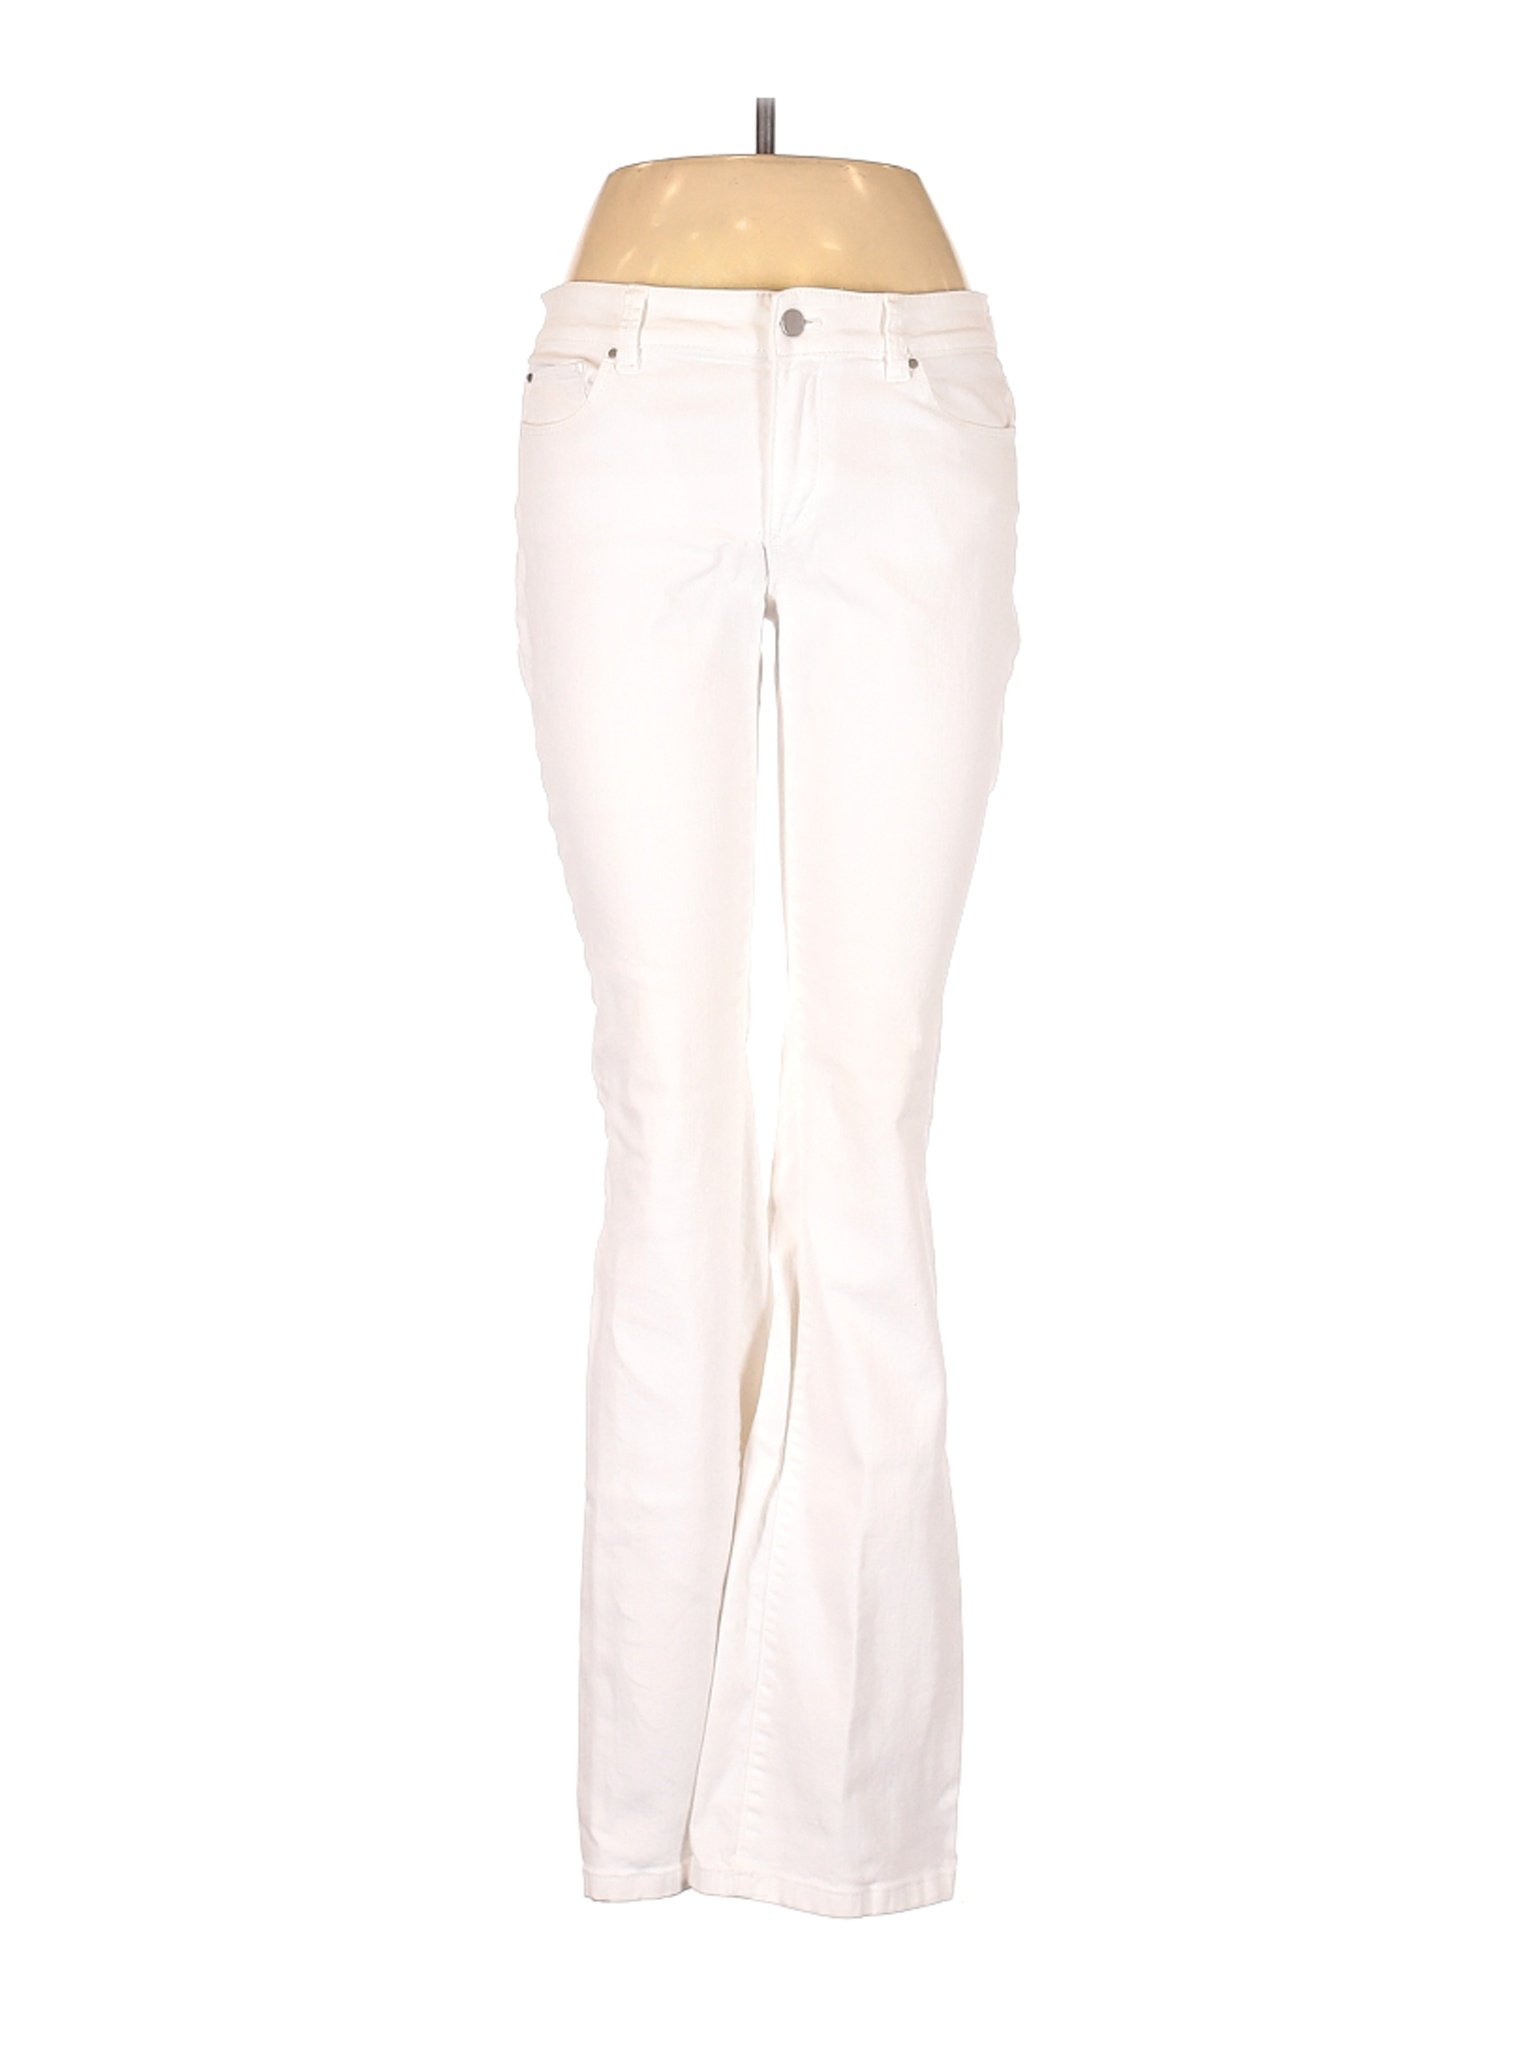 Ann Taylor Women White Jeans 6 | eBay